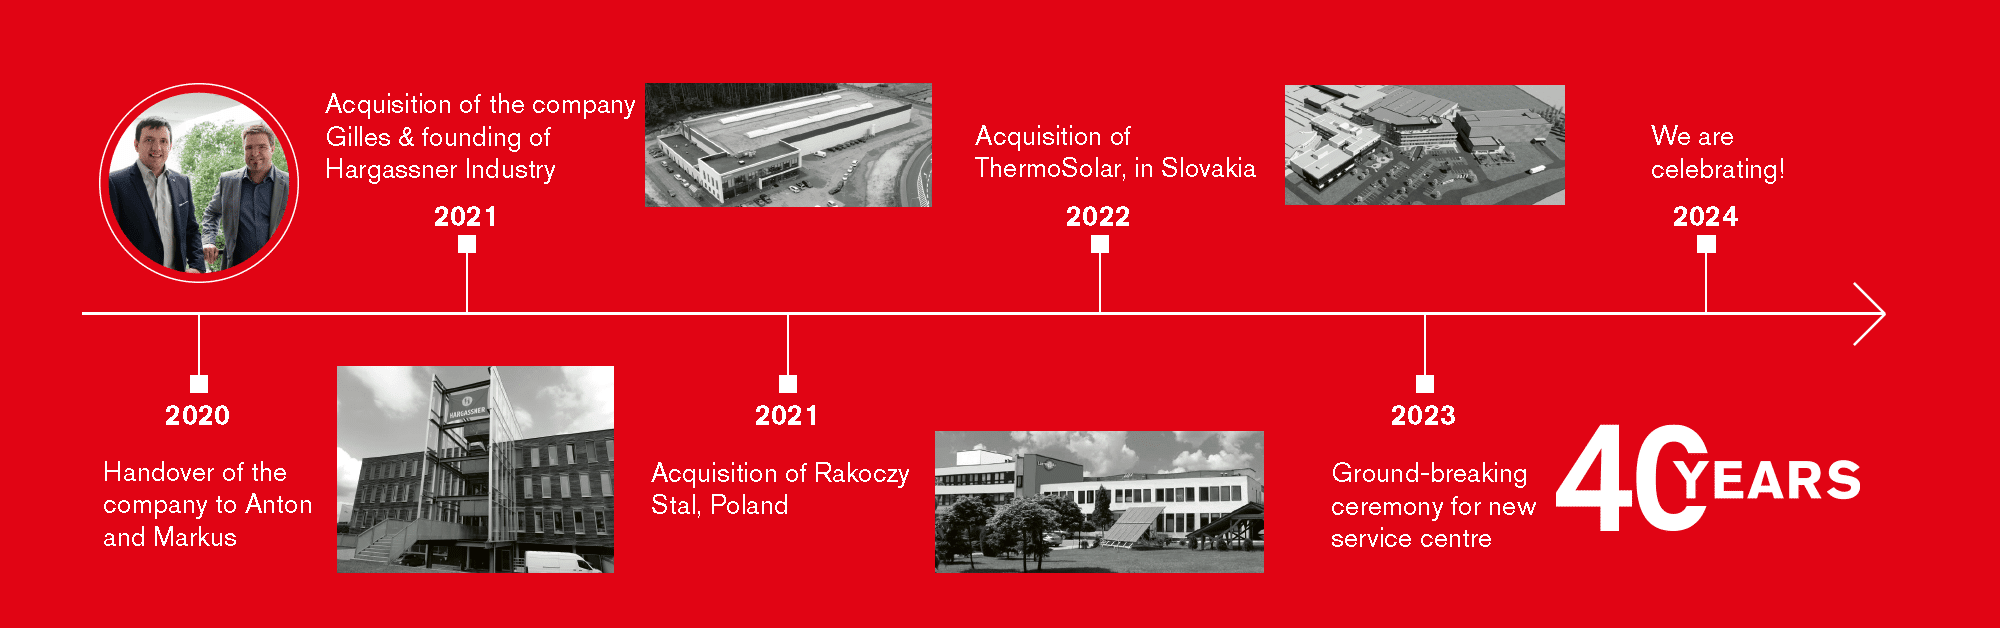 Hargassner's history timeline 2020-2024 | Hargassner